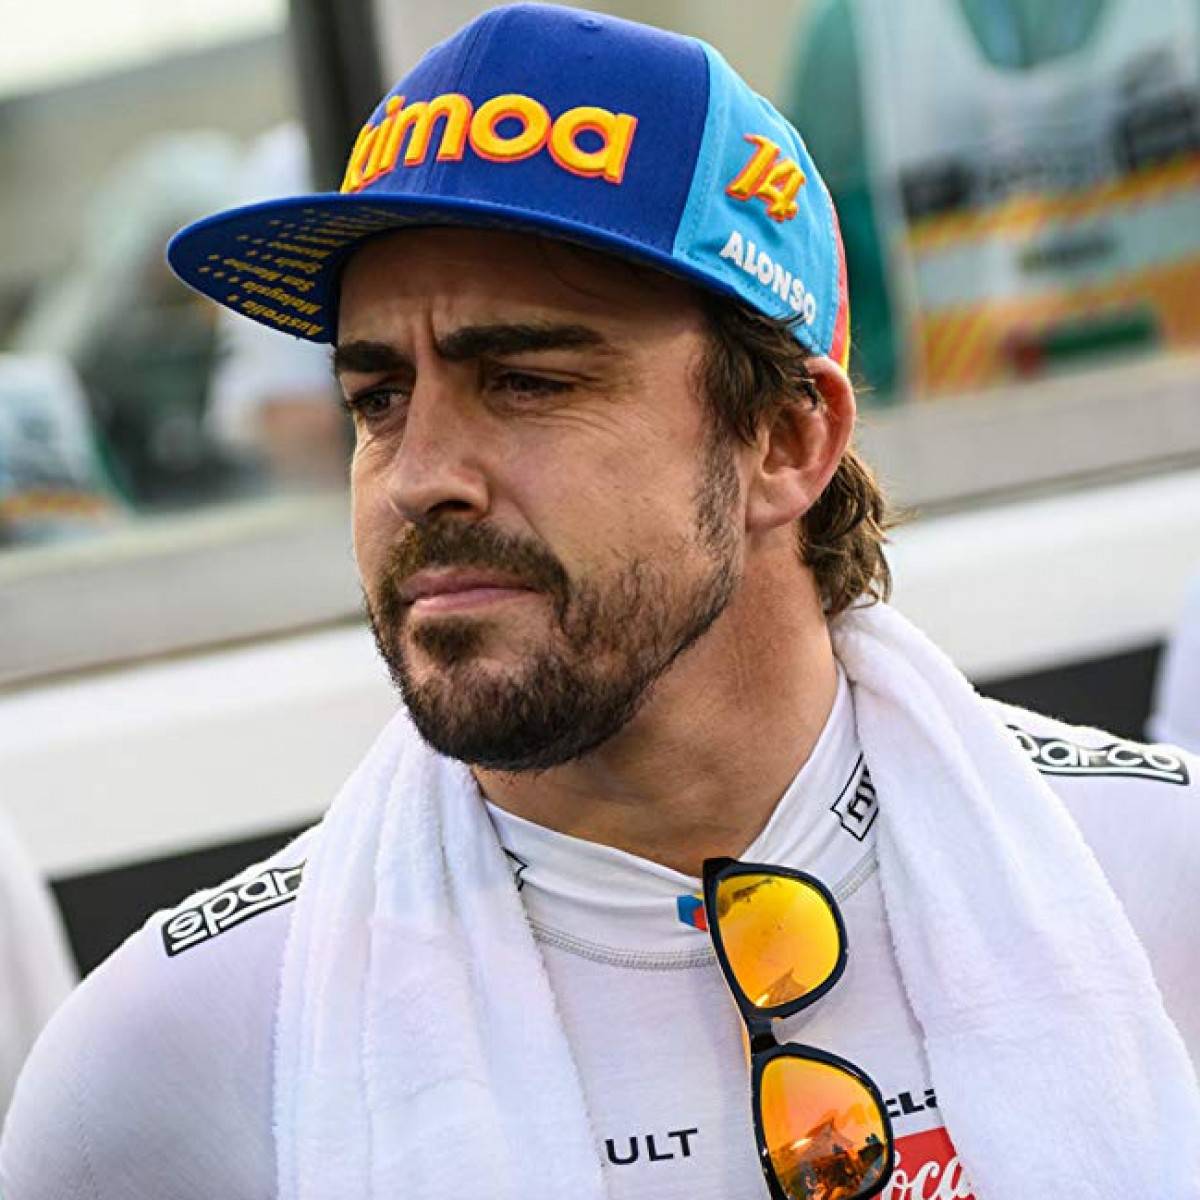 Fernando Alonso : Fernando alonso díaz (born 29 july 1981 in oviedo ...